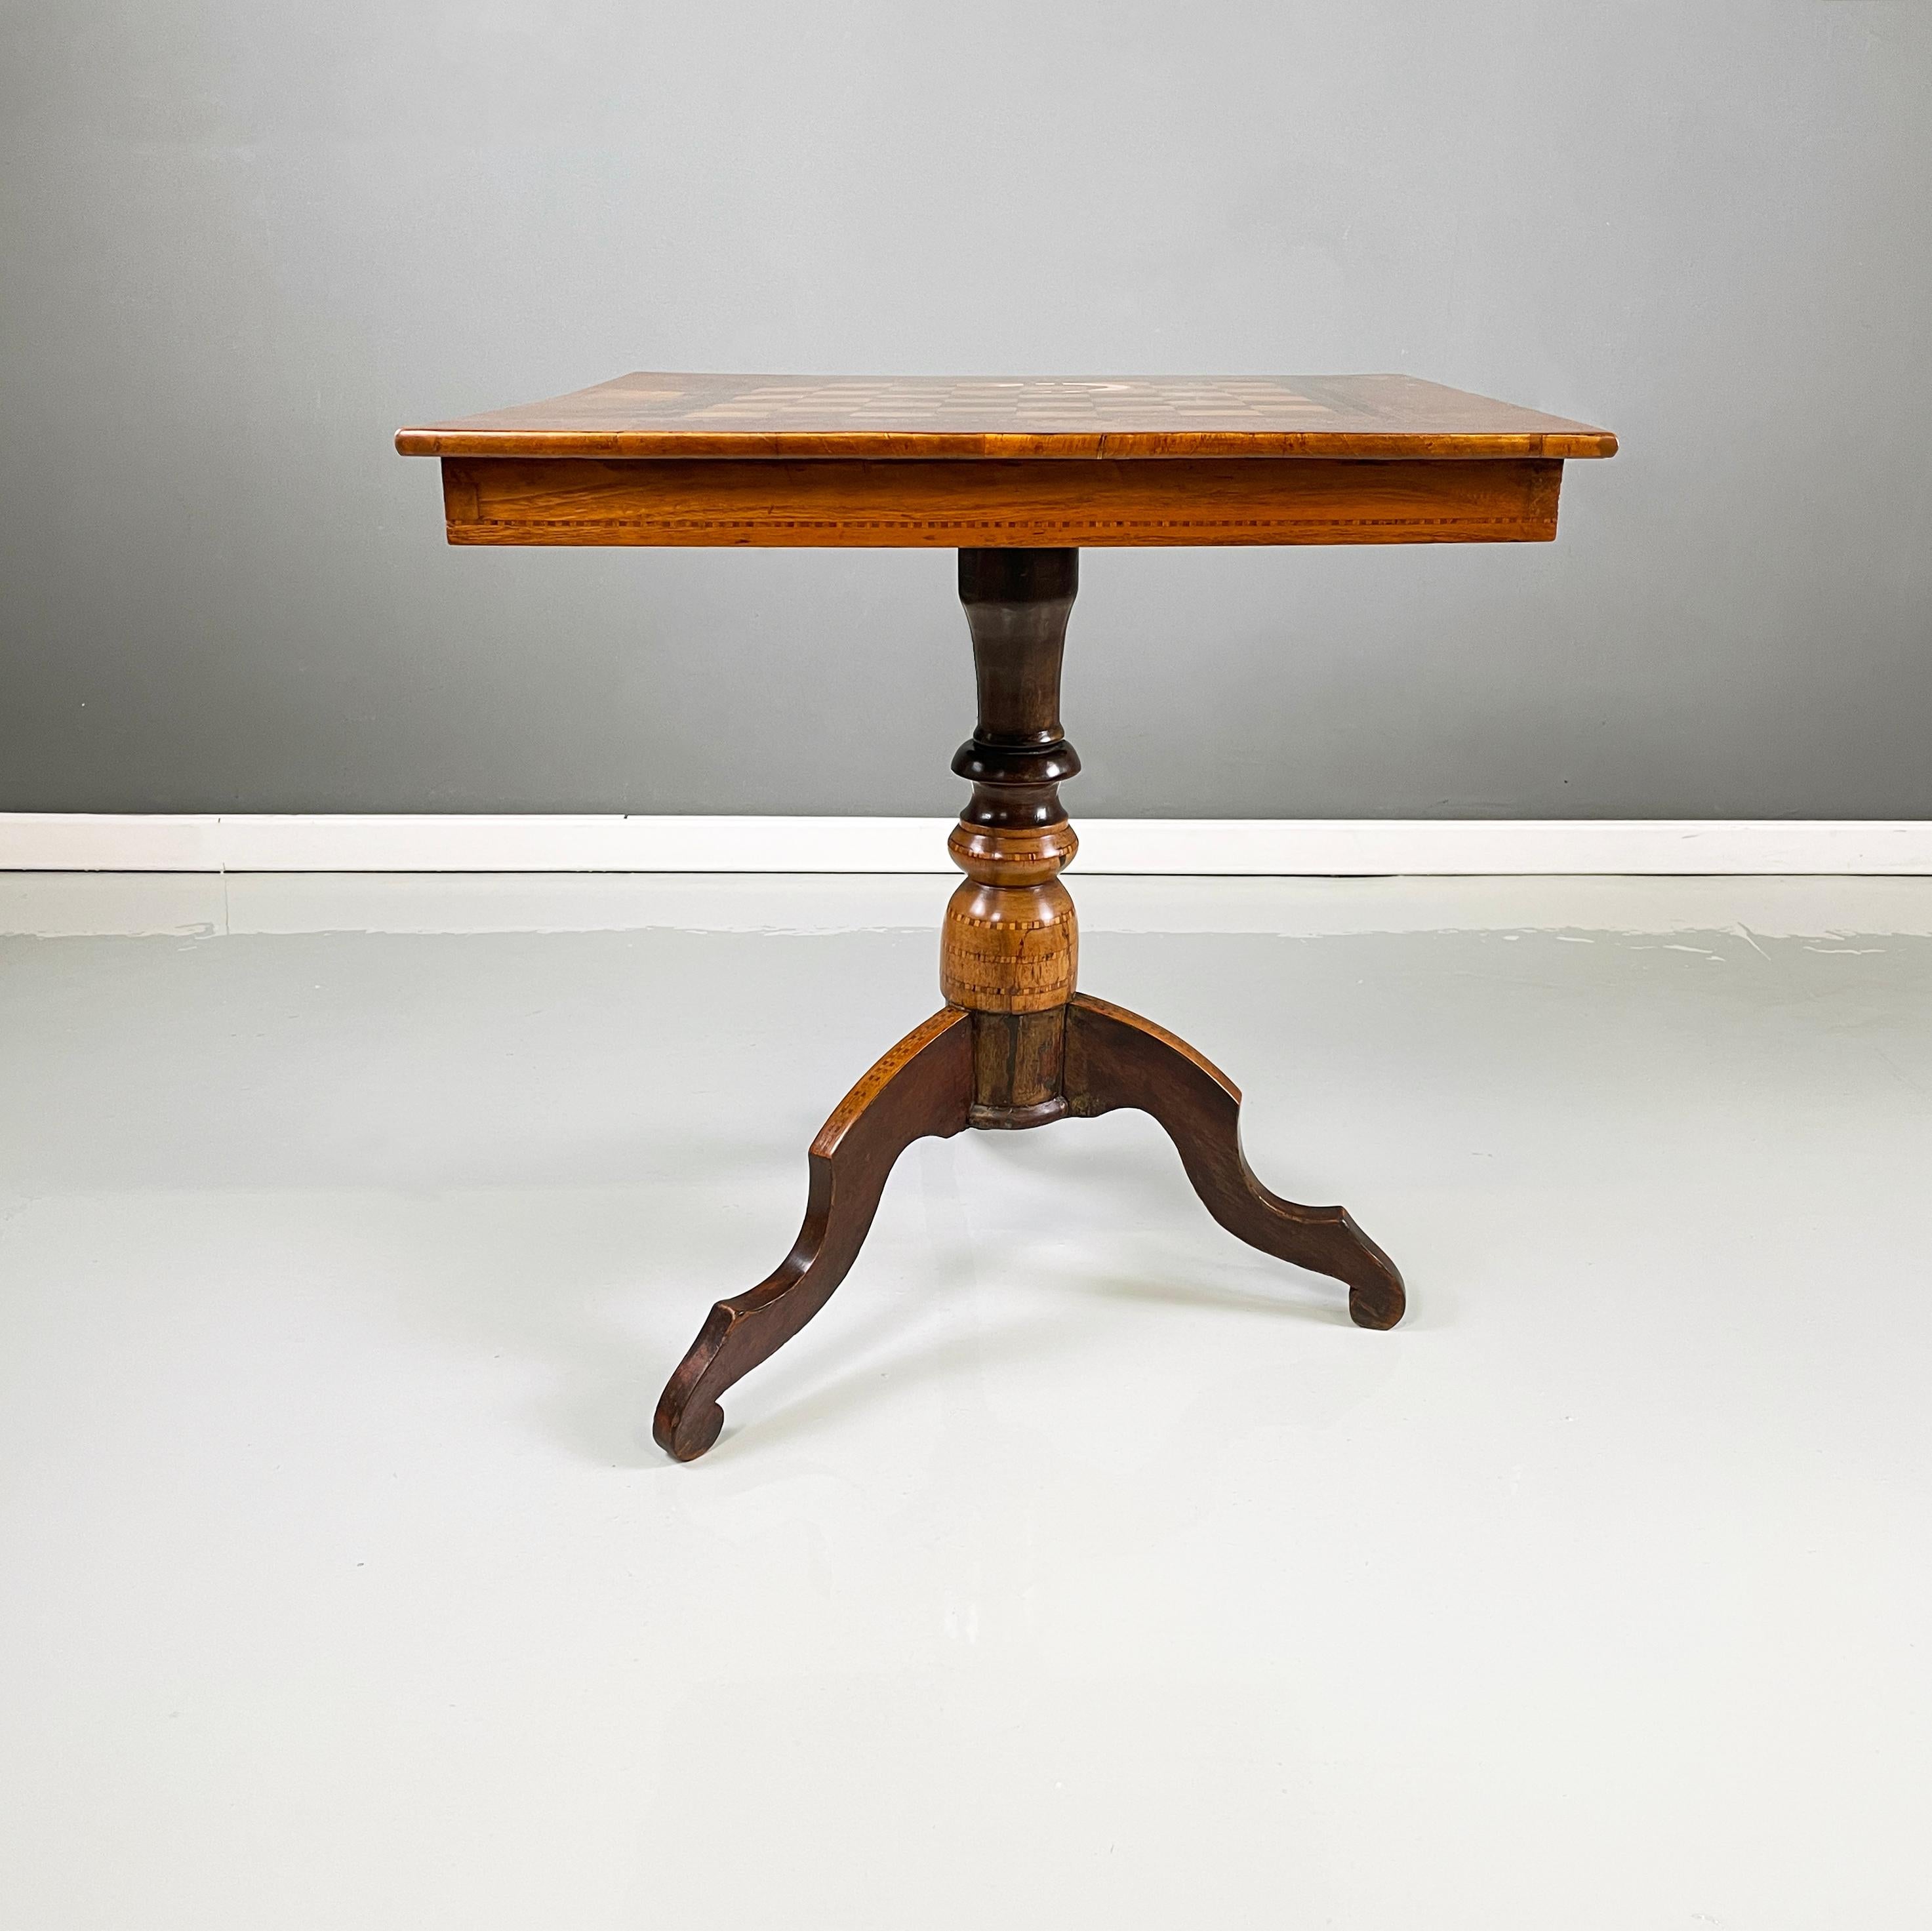 Italienischer antiker Spieltisch aus Holz  mit Schachbrett, frühe 1900er Jahre
Spieltisch mit Schachbrett, ganz aus Holz. Die quadratische Platte besteht aus hellen und dunklen Holzschachbrettquadraten. An einer Seite befindet sich eine rechteckige